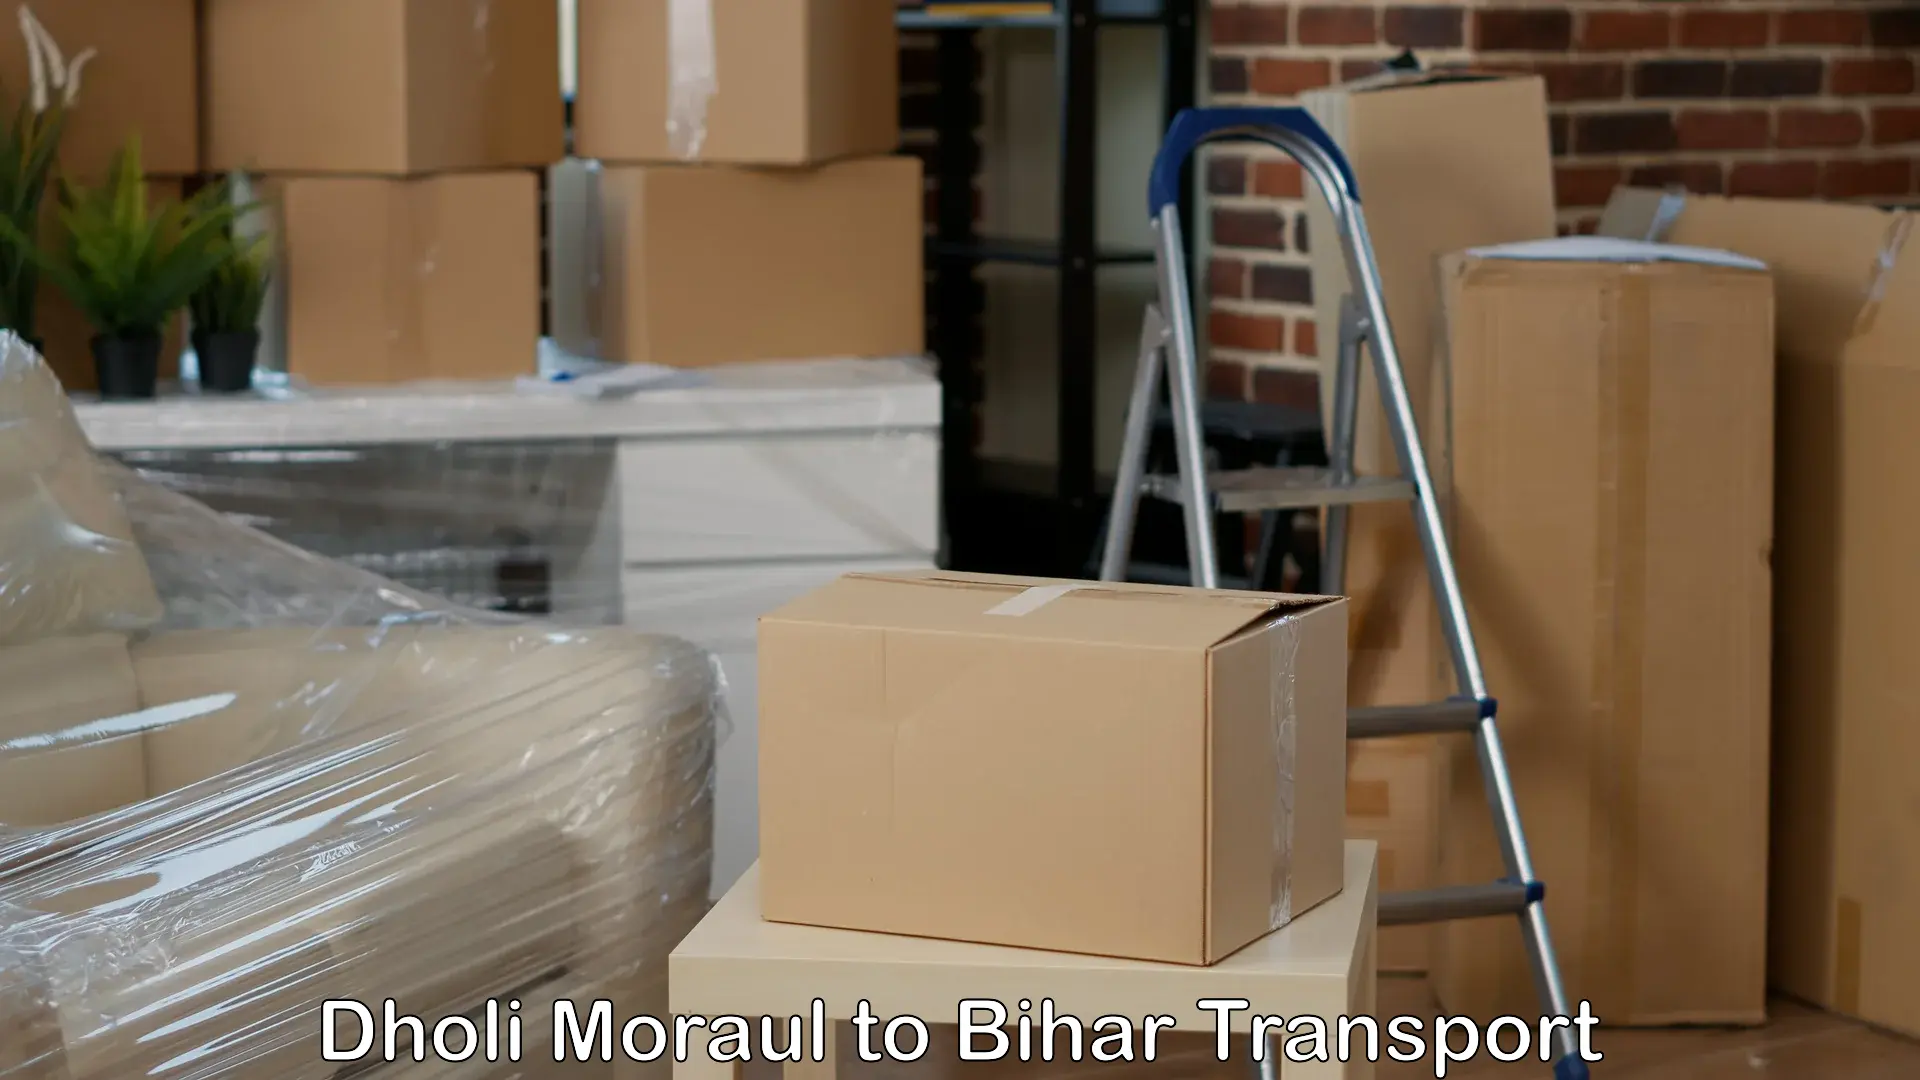 Furniture transport service Dholi Moraul to Sheohar